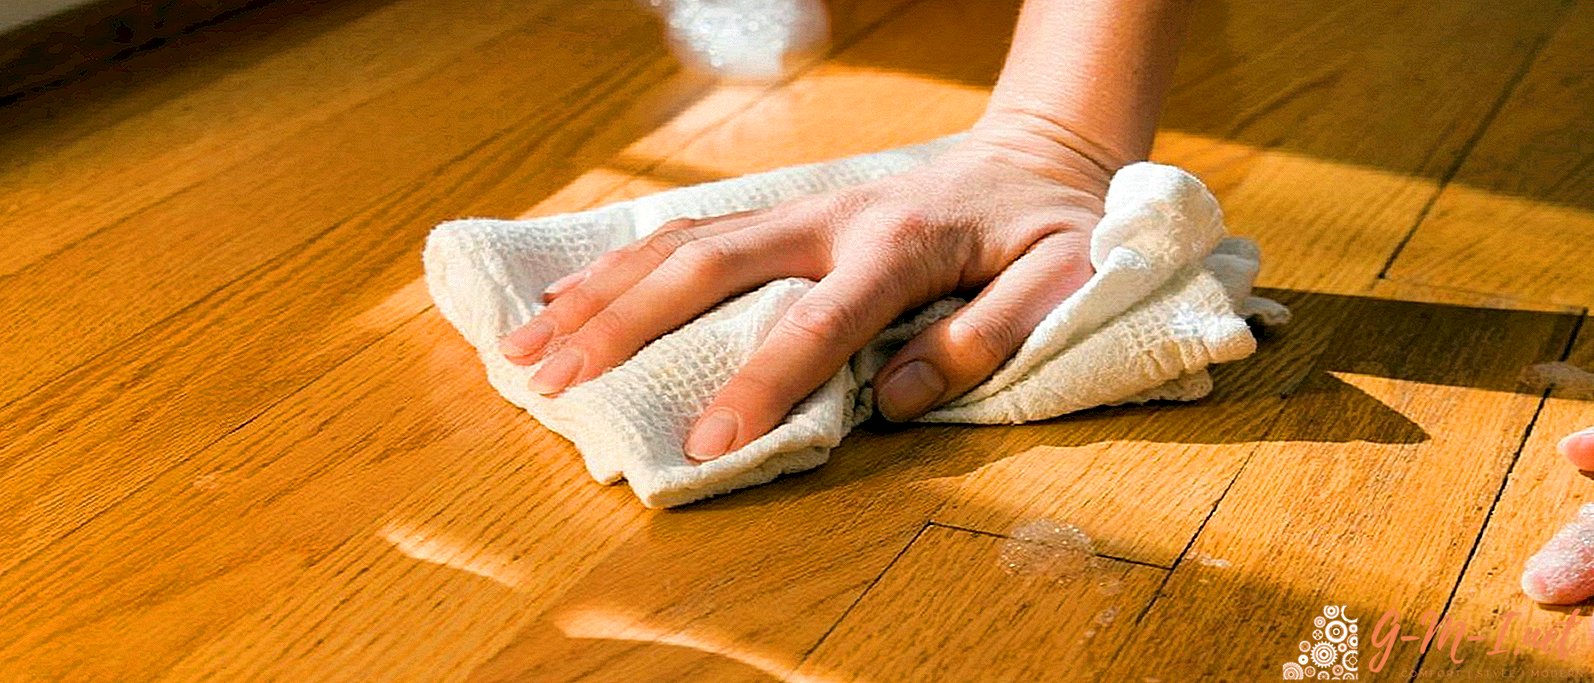 Warum kann man den Boden nicht mit einem Handtuch waschen